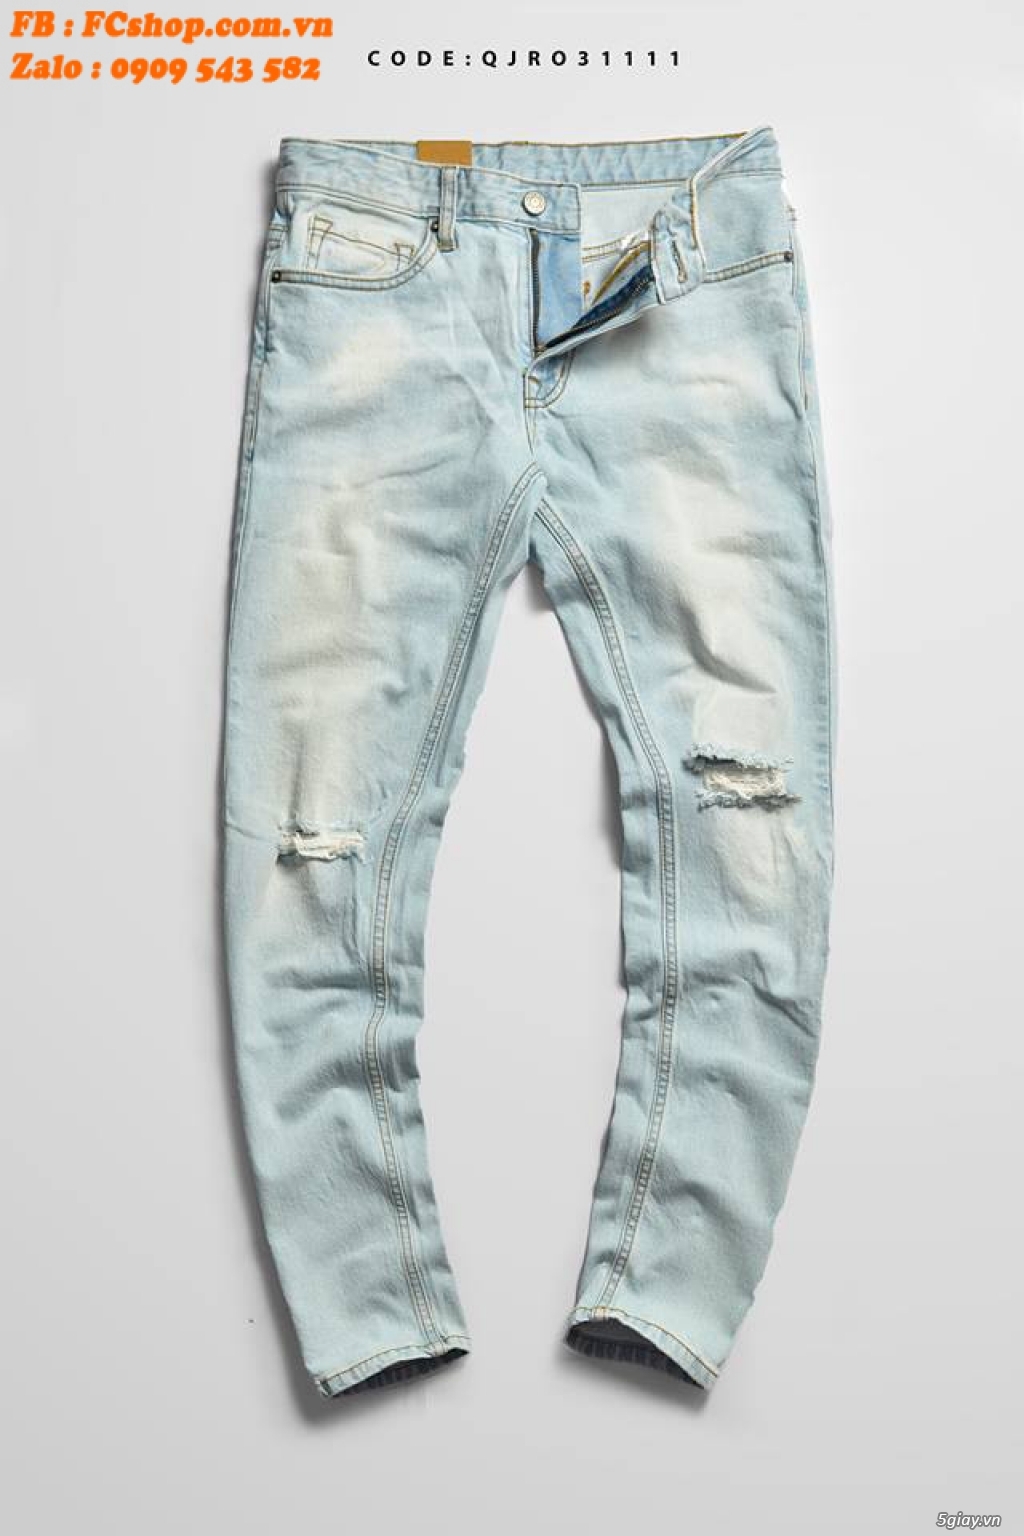 [TRÙM ĐỒ JEANS] - FCshop Chuyên quần jeans, sơmi jeans, khoác jeans .. - 35